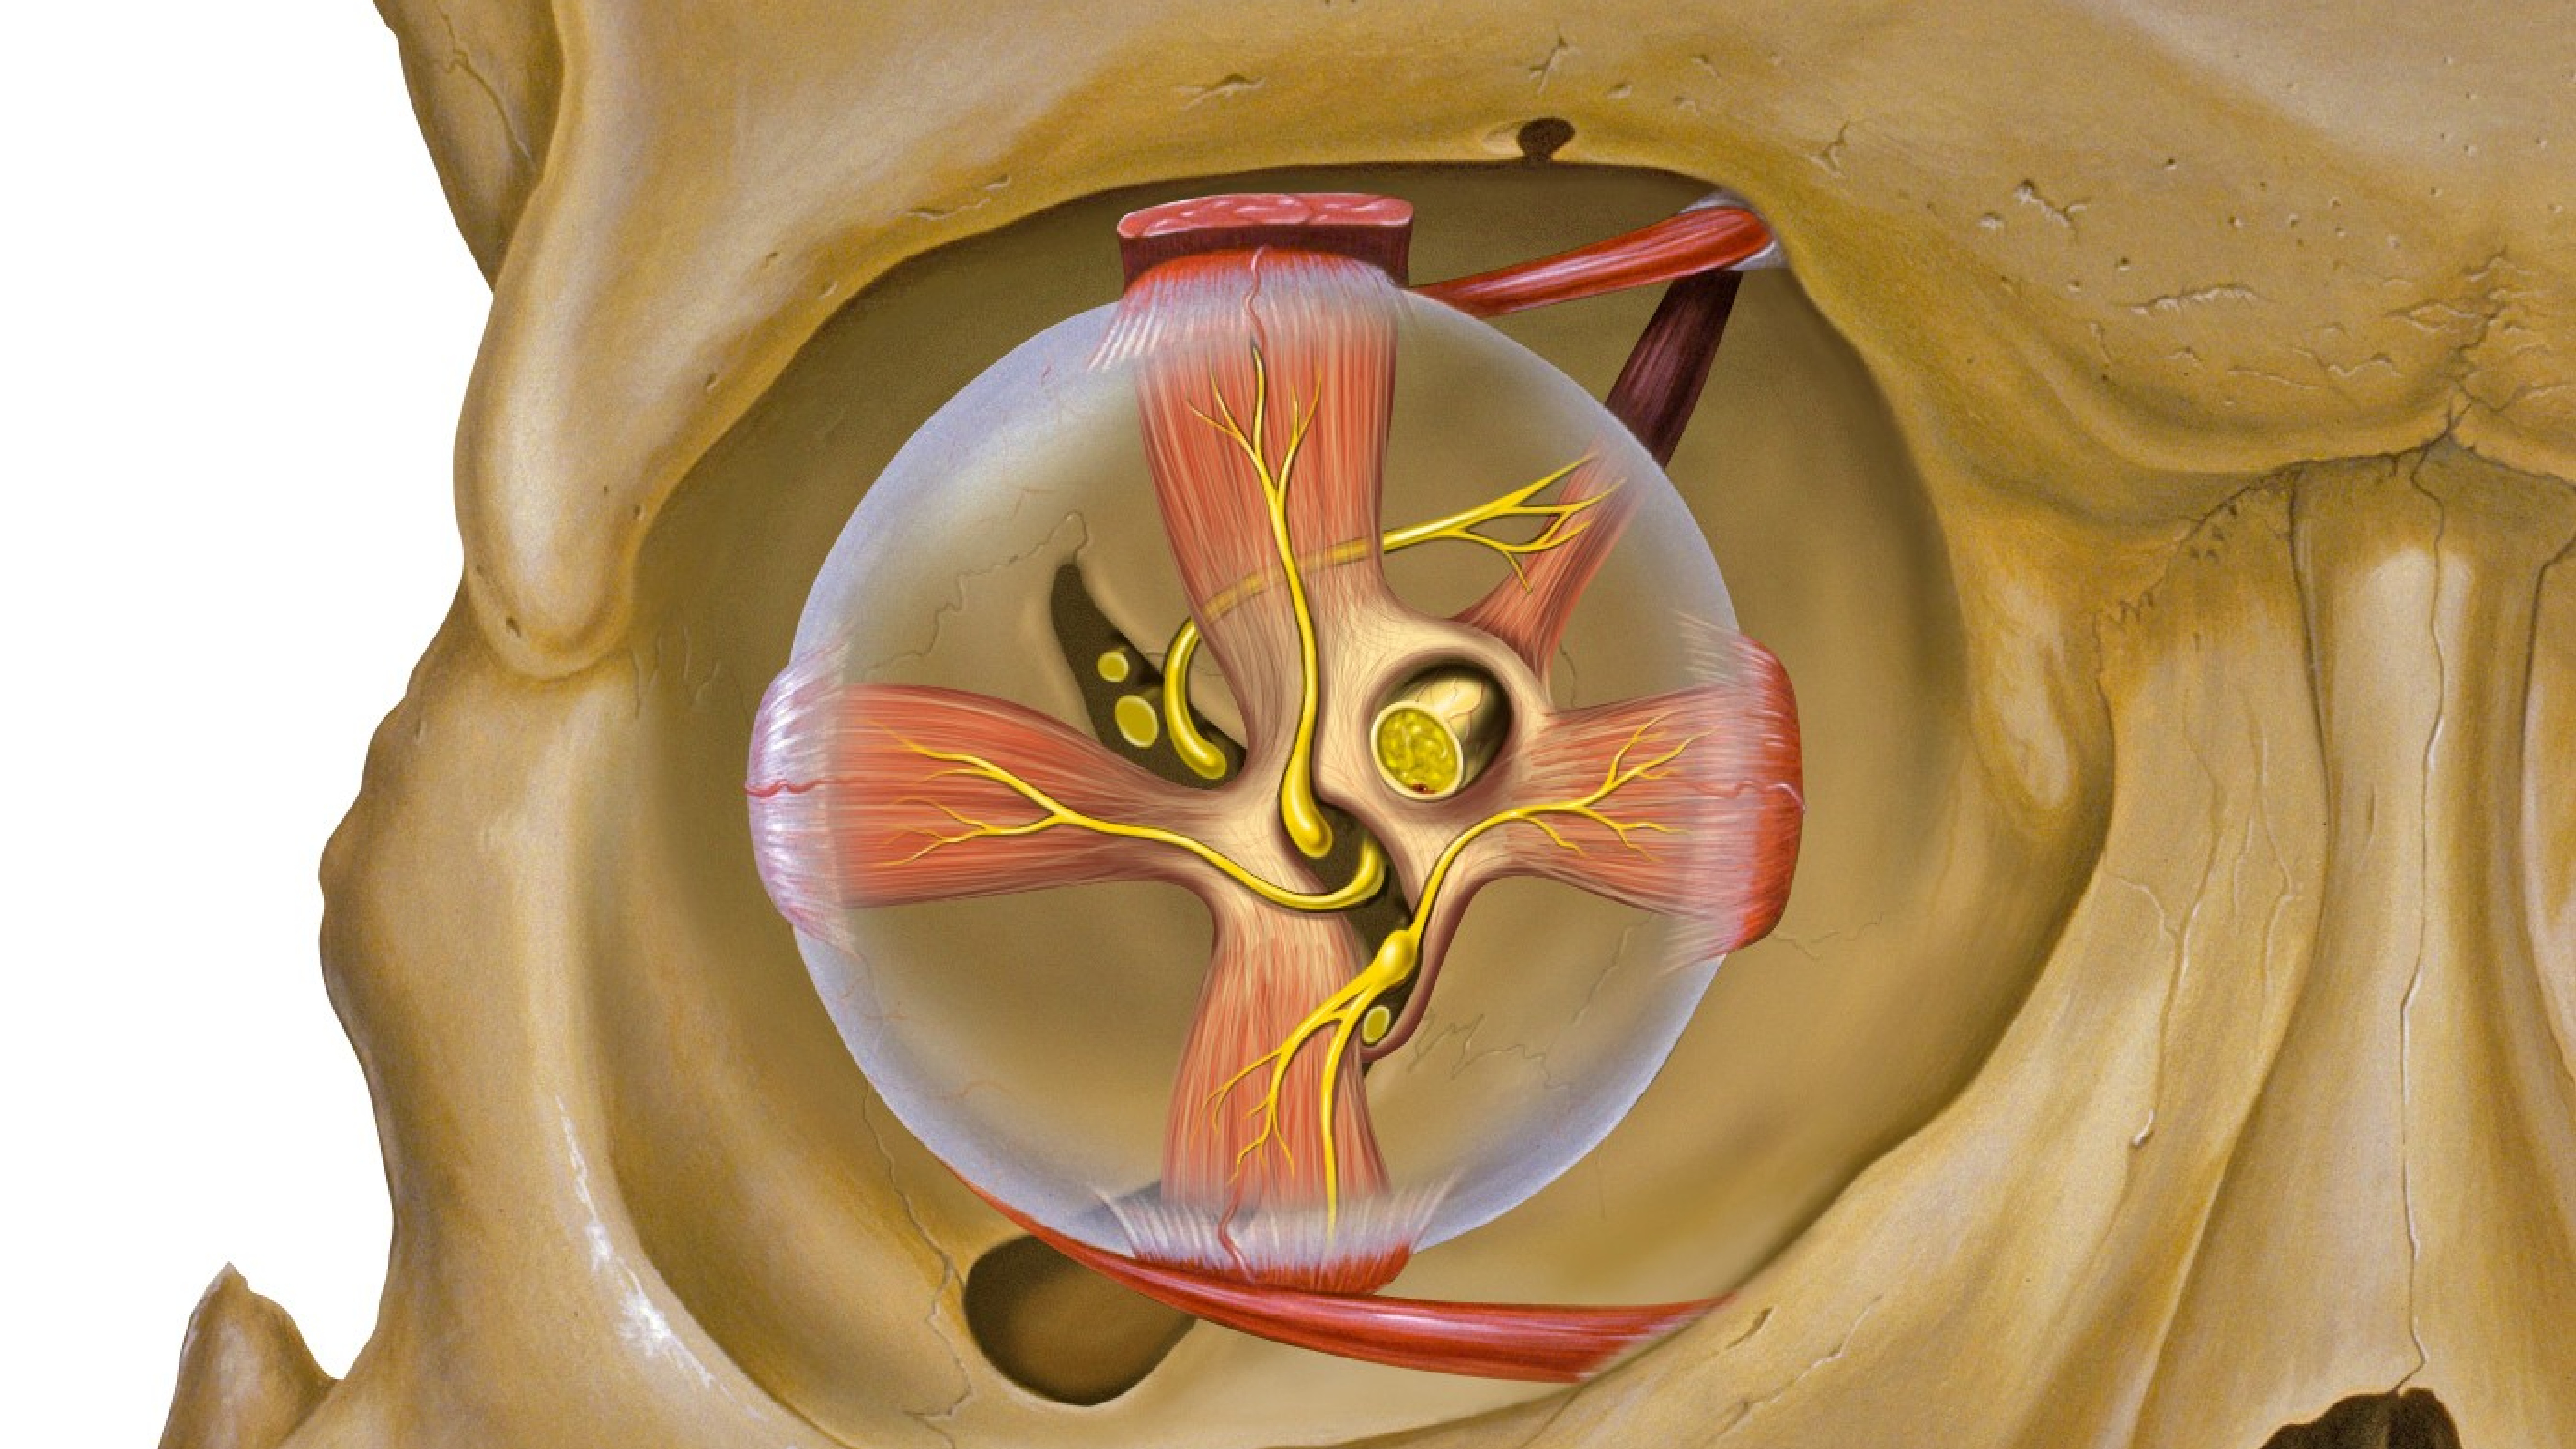 Глазные яблоки расположены в парных углублениях черепа